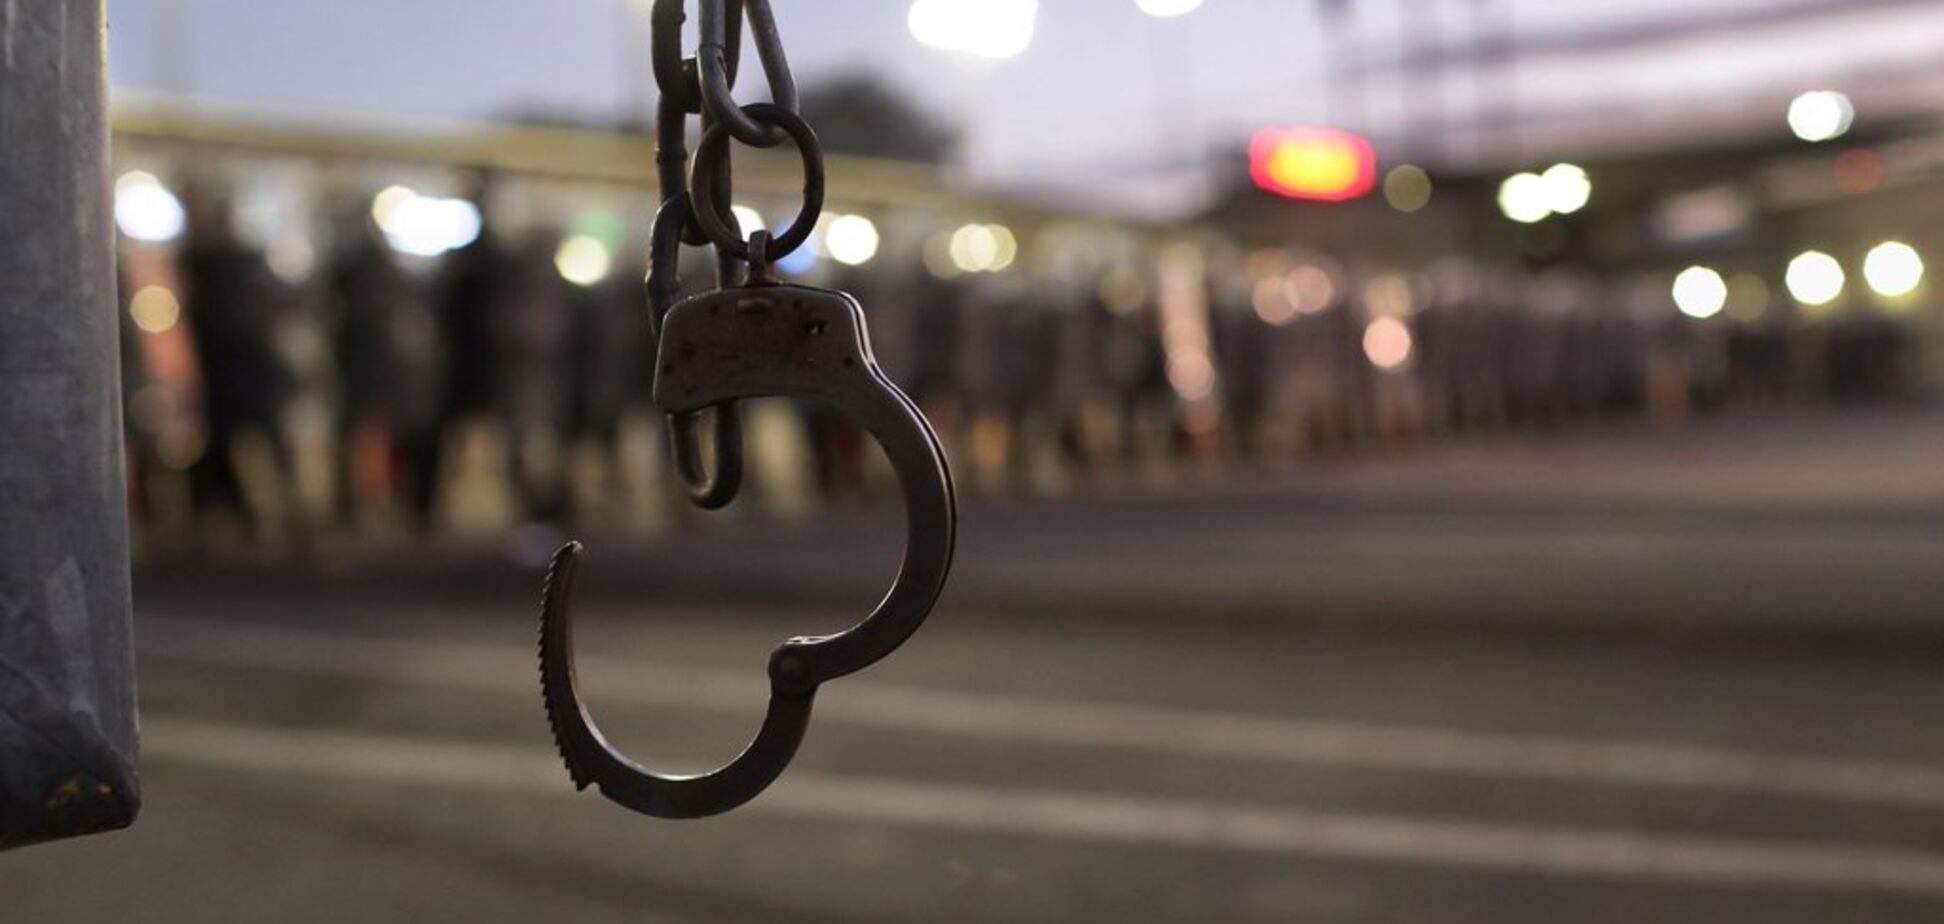 Прикували наручниками посеред вулиці: у центрі Києва сталося зухвале пограбування